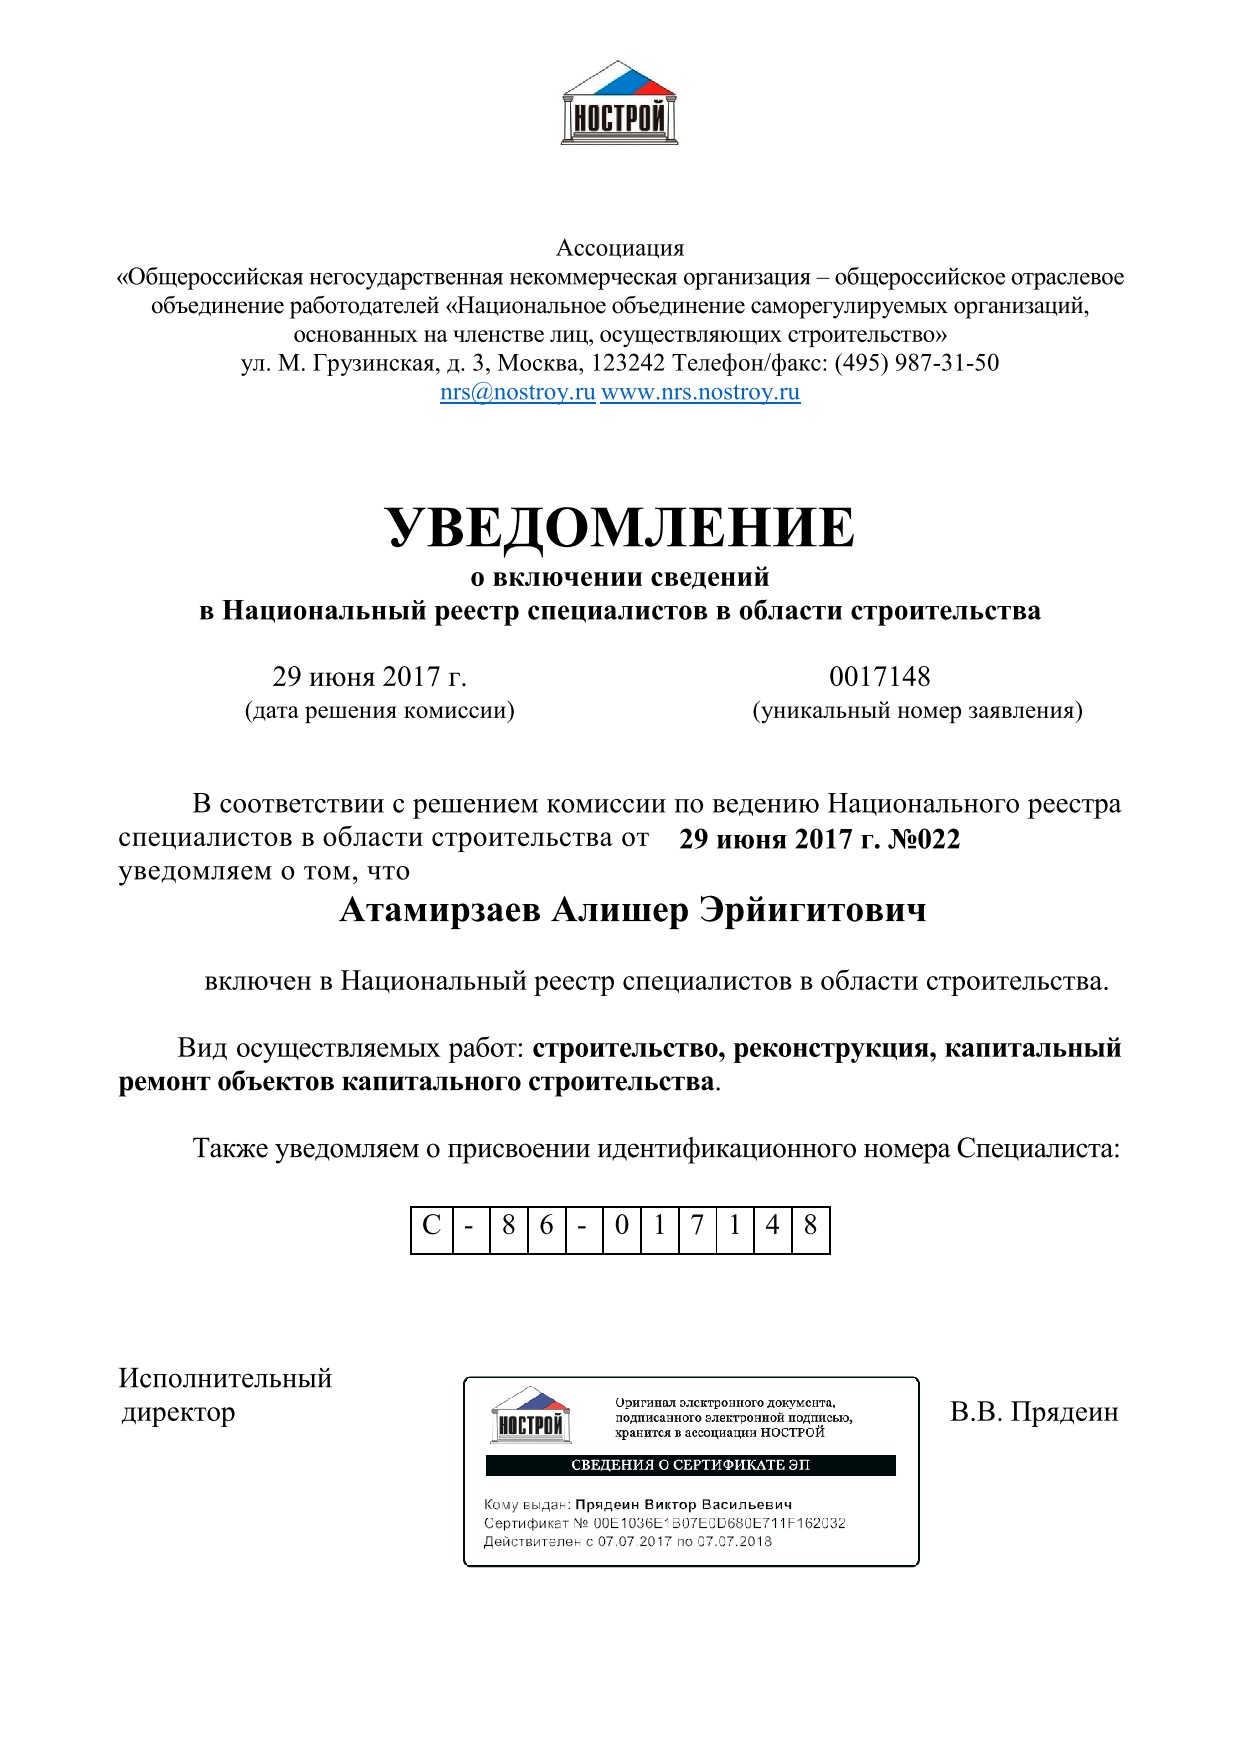 Уведомление о включении сведений в Национальный реестр специалистов в области строительства Атамирзаева Алишера Эрйигитовича 